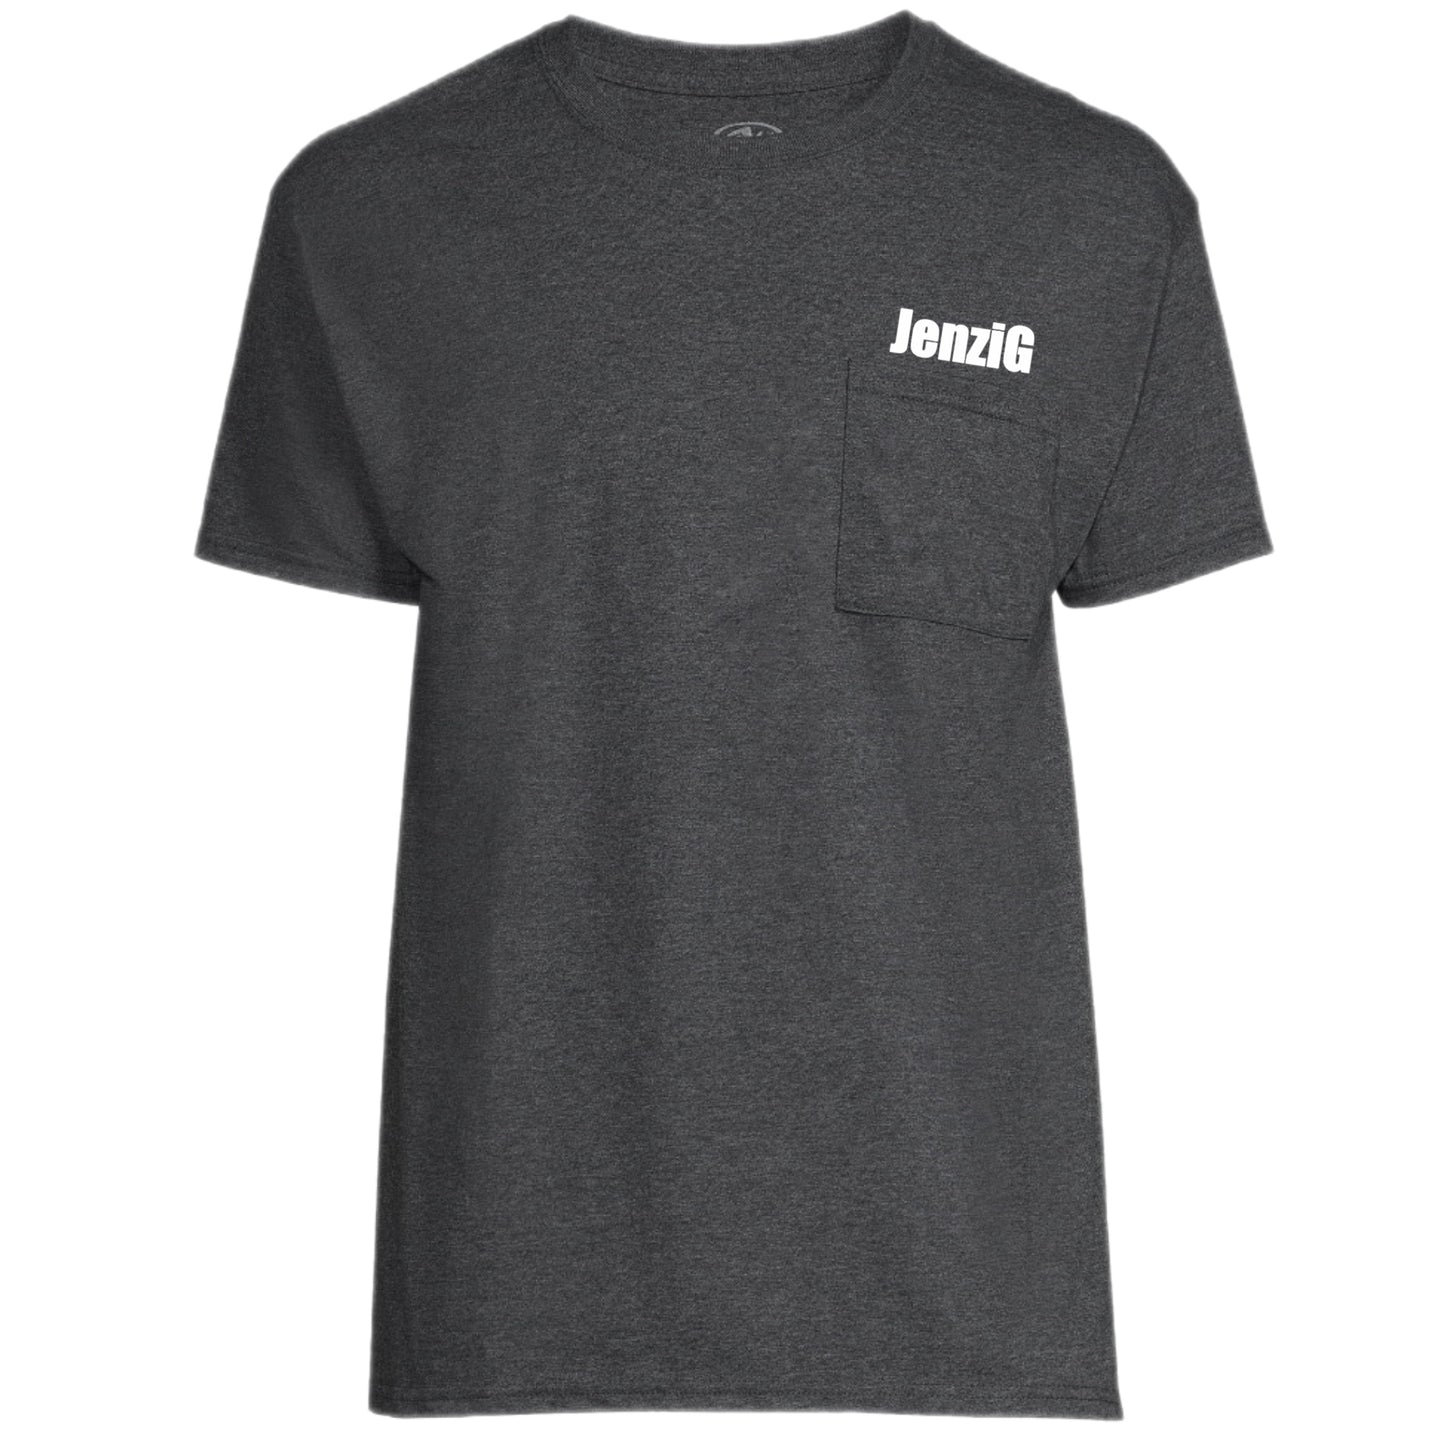 JenziG White Logo T-Shirt (Limited)